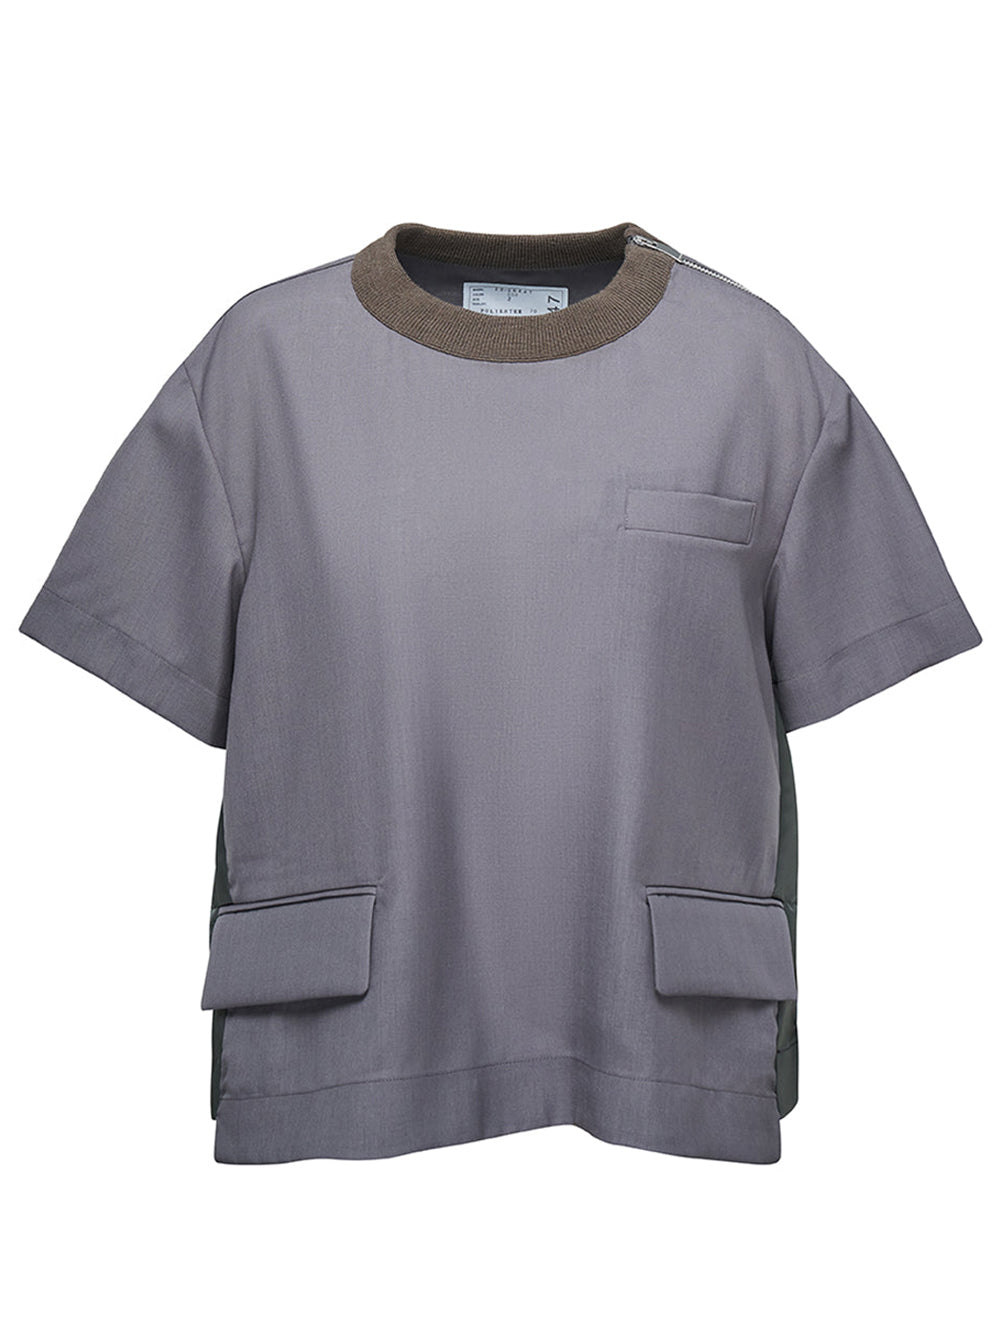 注目ブランドのギフト SACAI - SUITING PULLOVER POシャツ/2 21-02459M ...